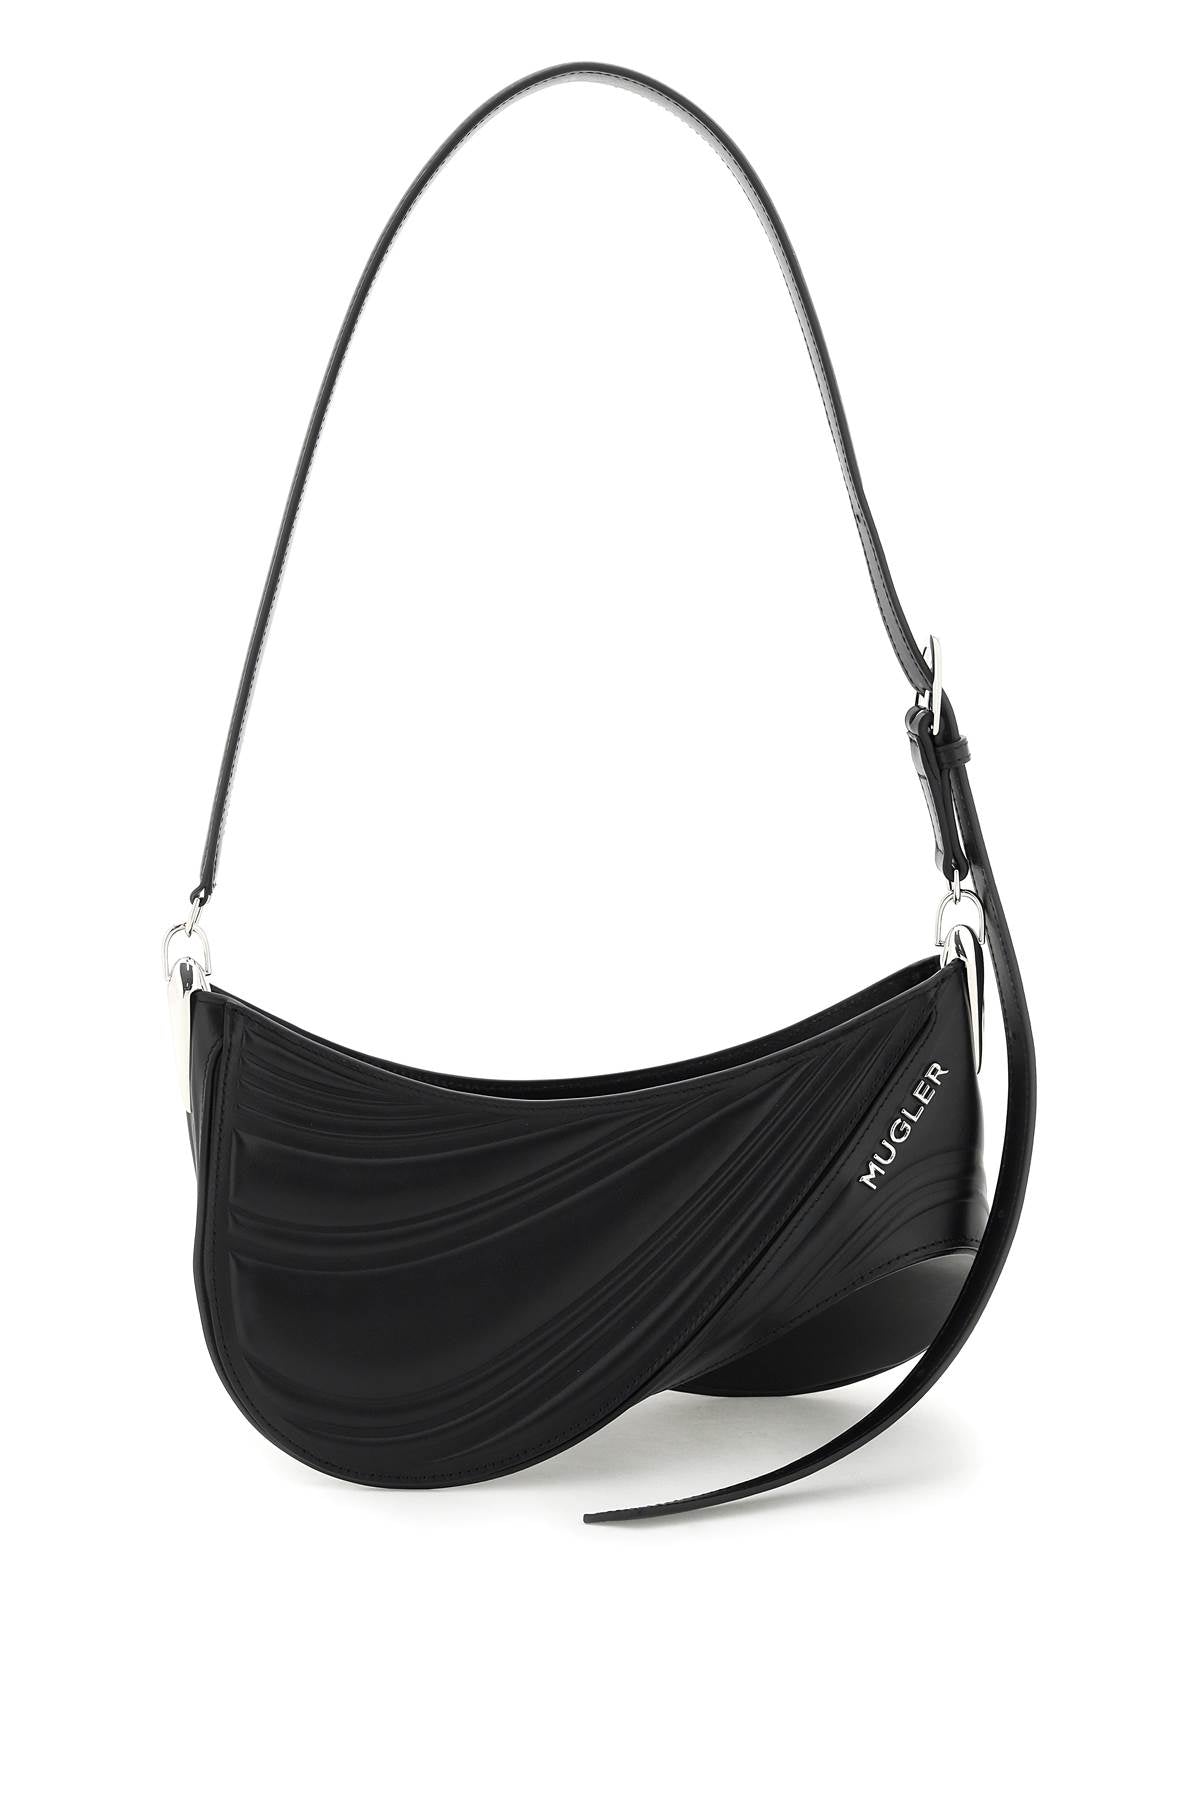 Spiral Curve Leather Shoulder Handbag in Black for Women